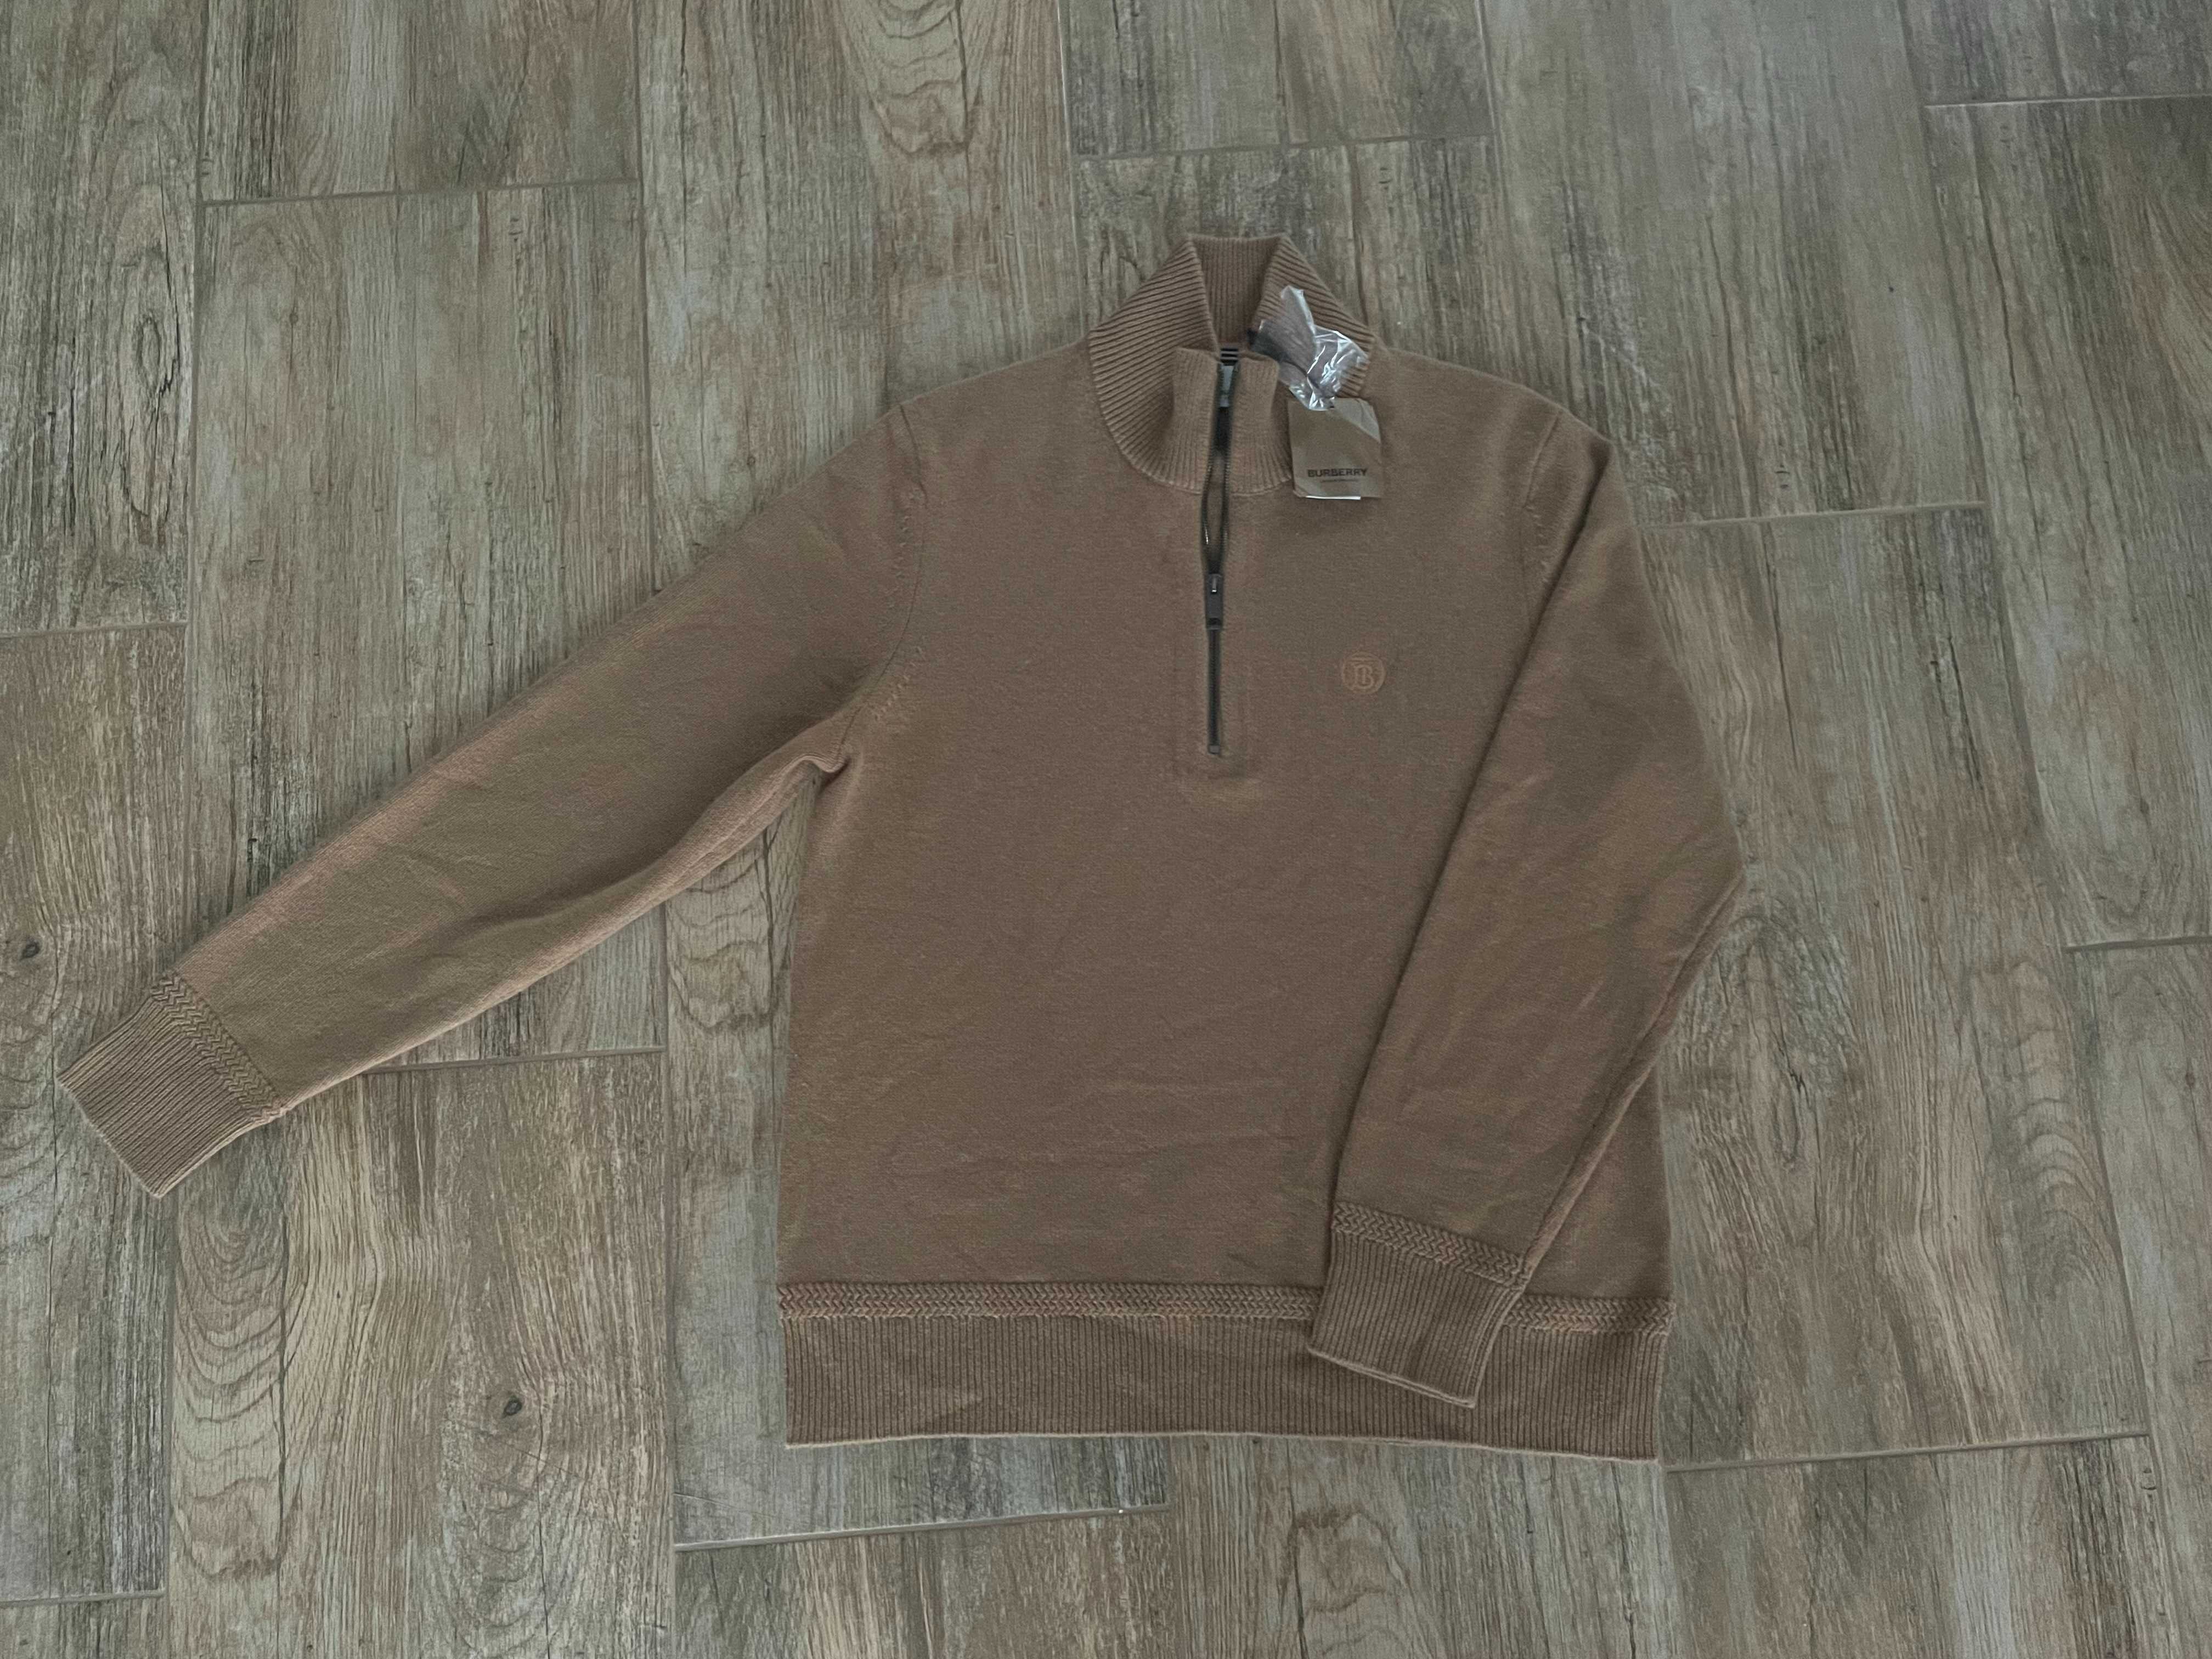 Męski sweter ekskluzywnej marki Burberry, kaszmir 100%, rozmiar XL